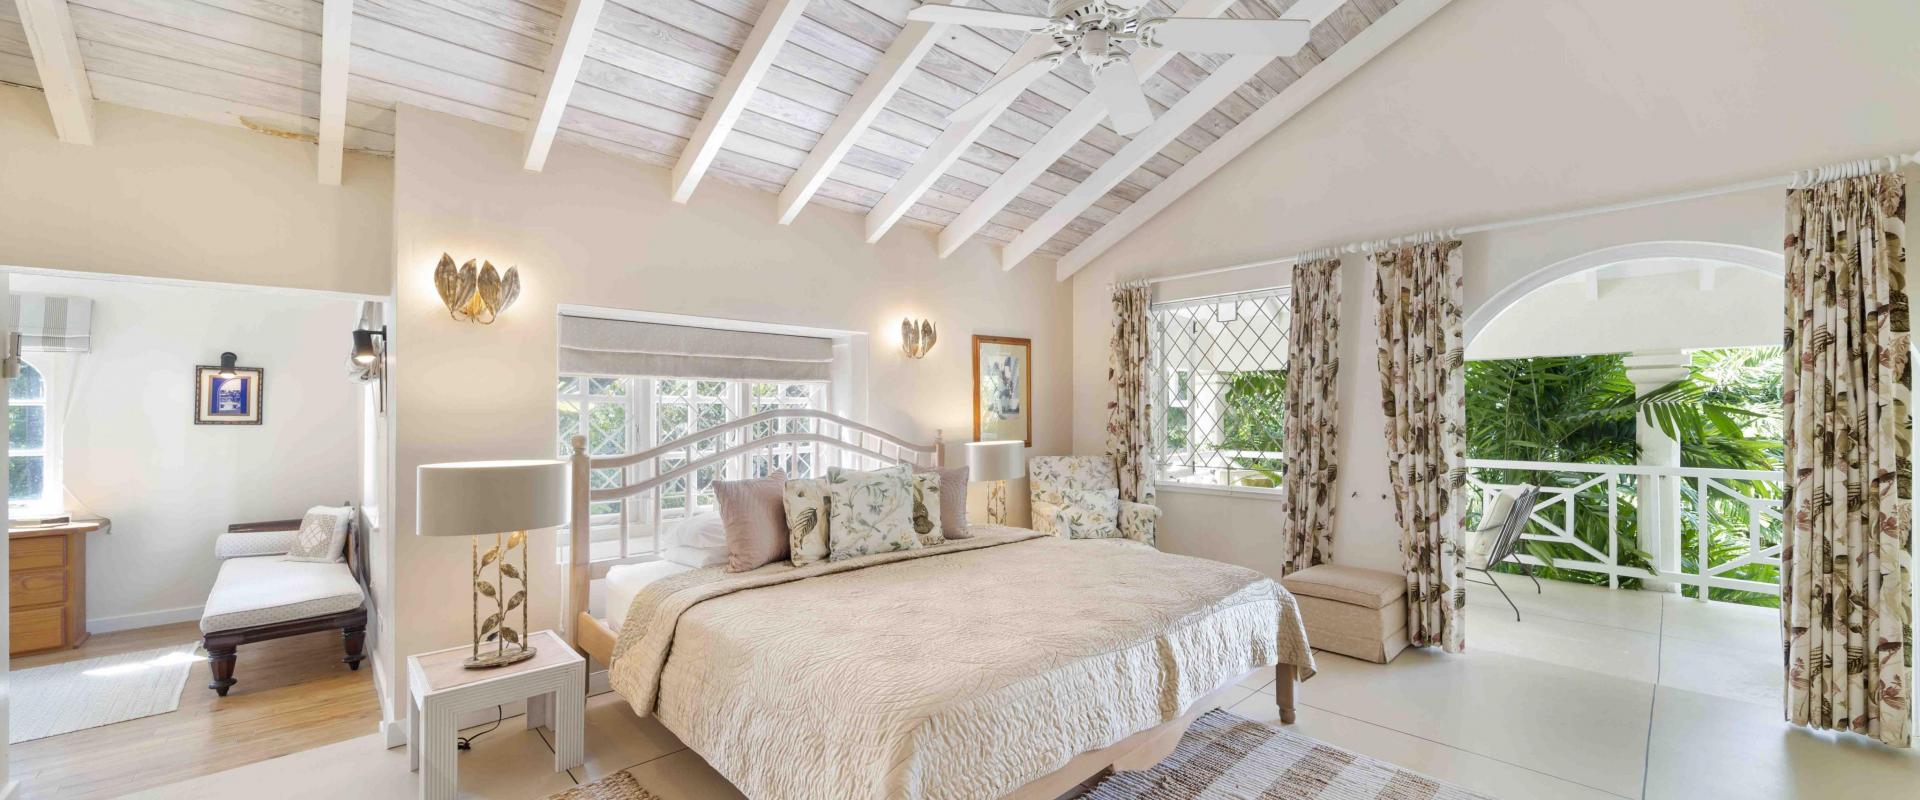 Dene Court Sandy Lane Barbados Master Bedroom with King Bed